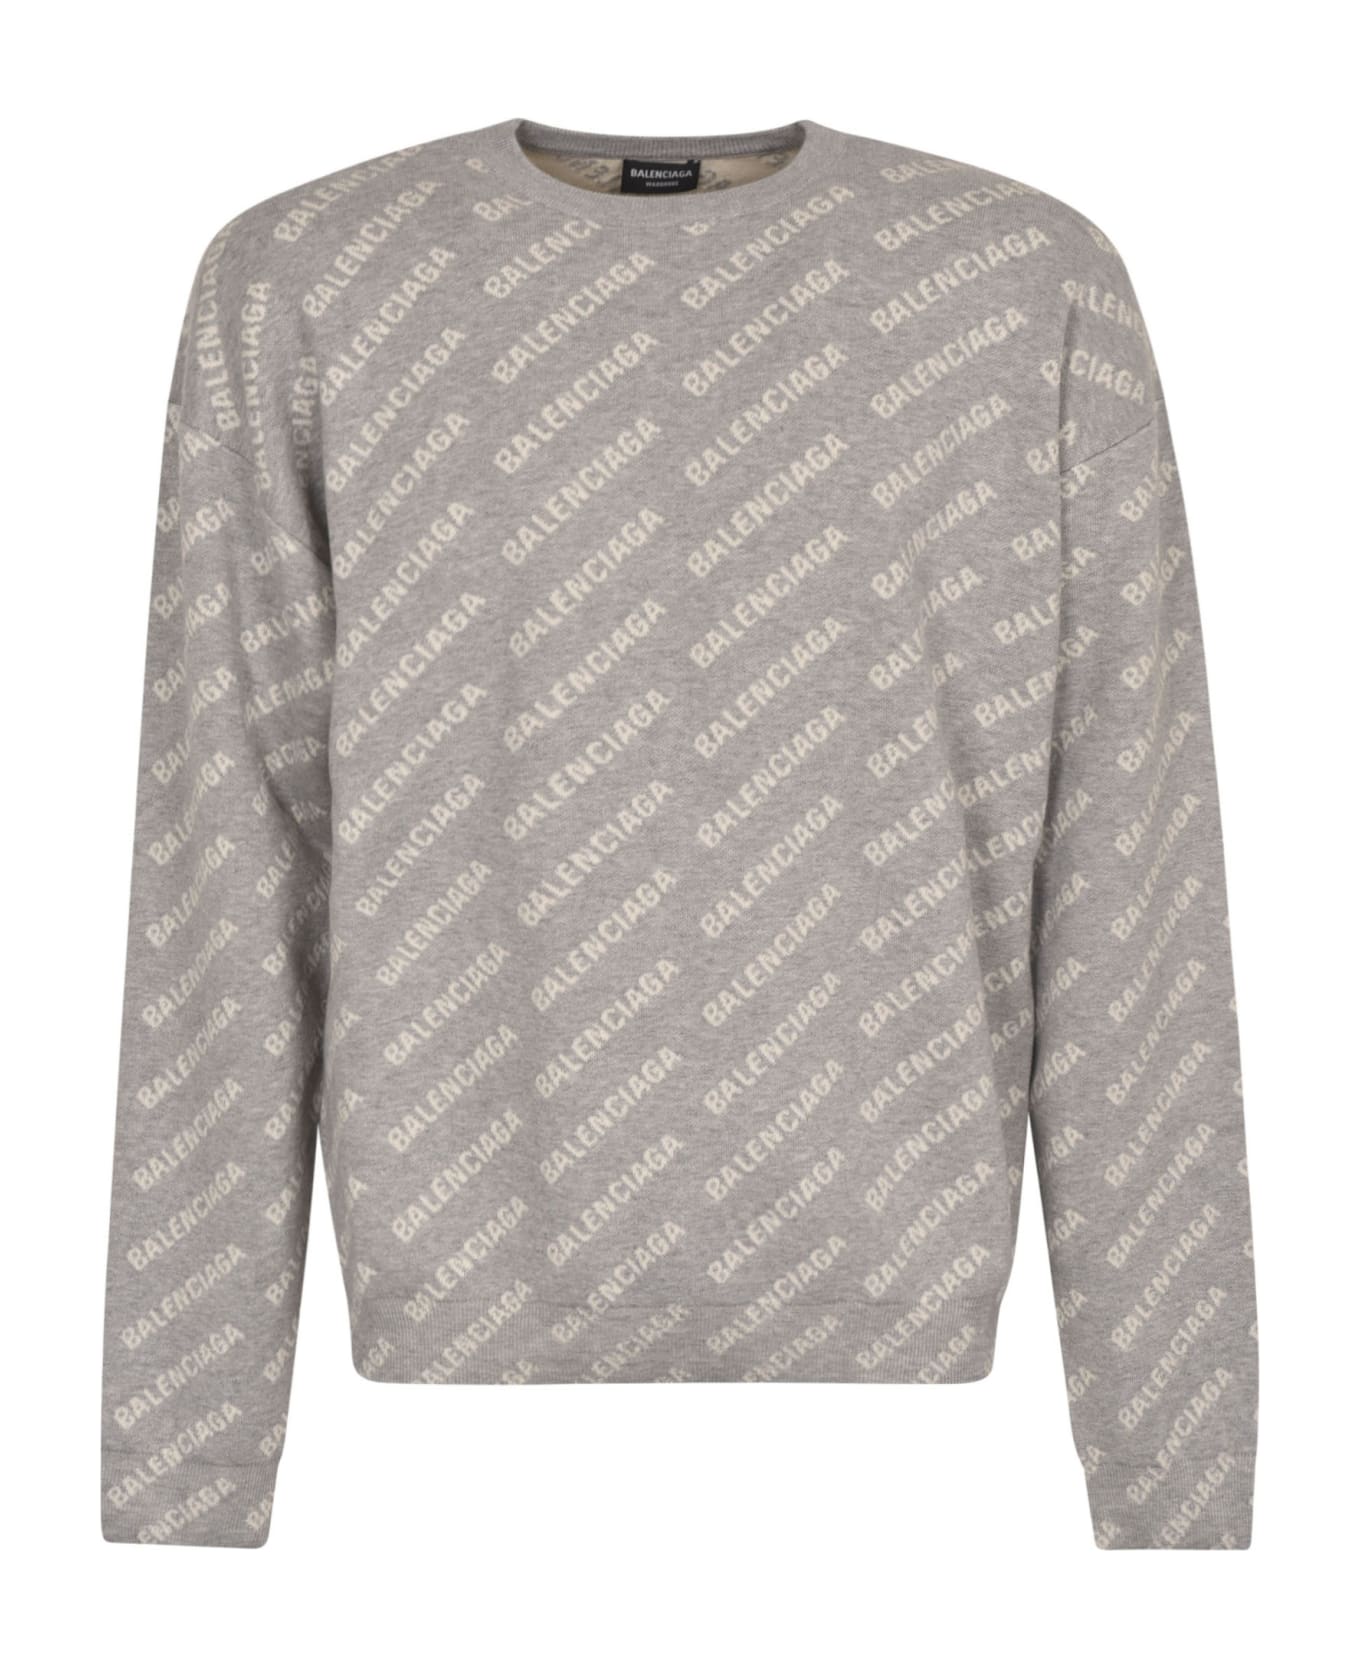 Balenciaga All-over Logo Sweater - Grey/White